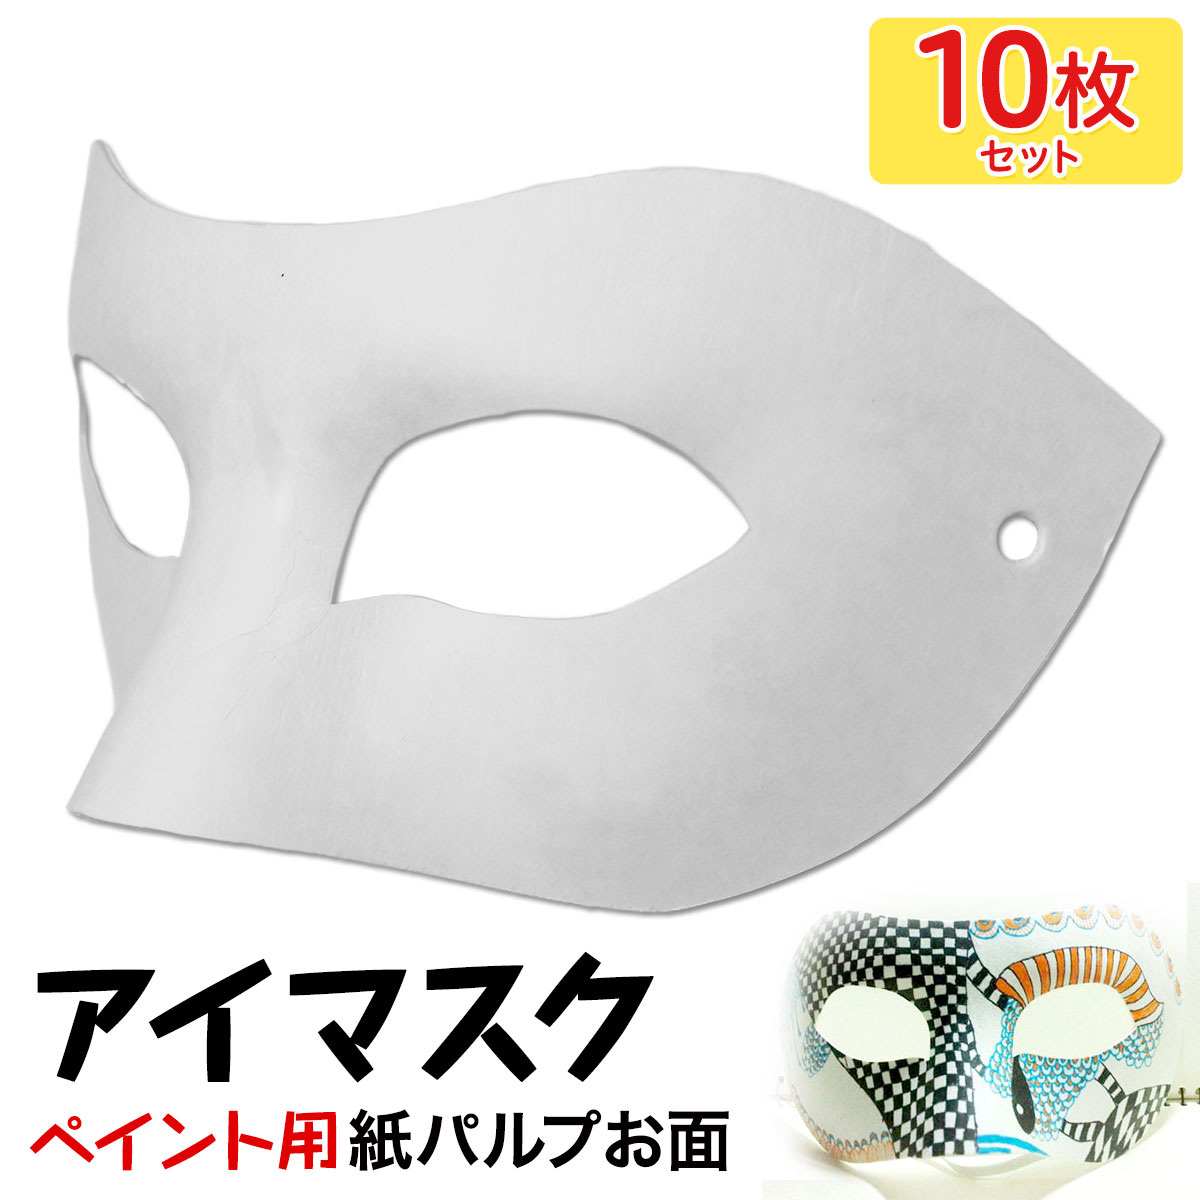 お面 ホワイトマスク アイマスク 仮面 無地 ペイント 飾り パーティー 紙パルプ製 10枚セット